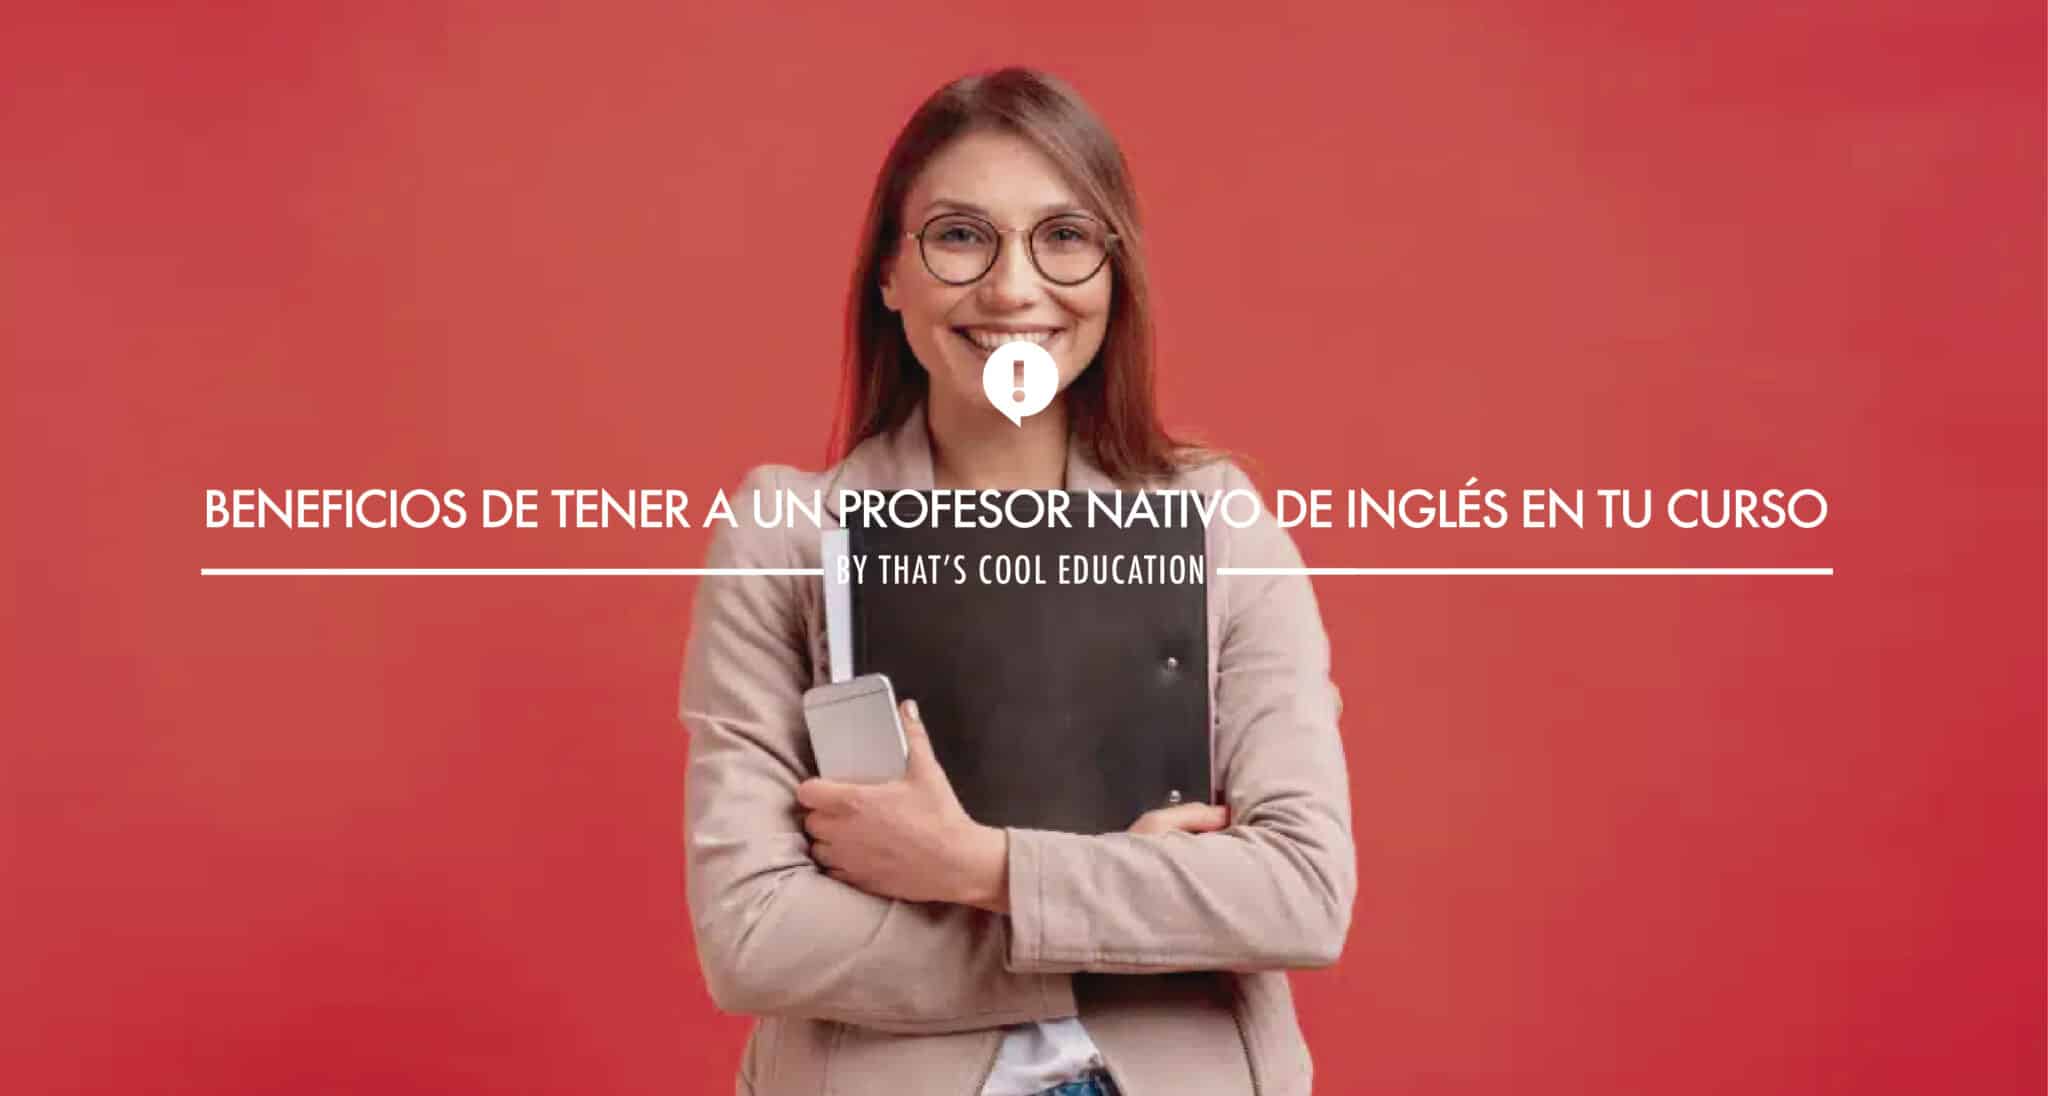 Profesores nativos de ingles en barcelona